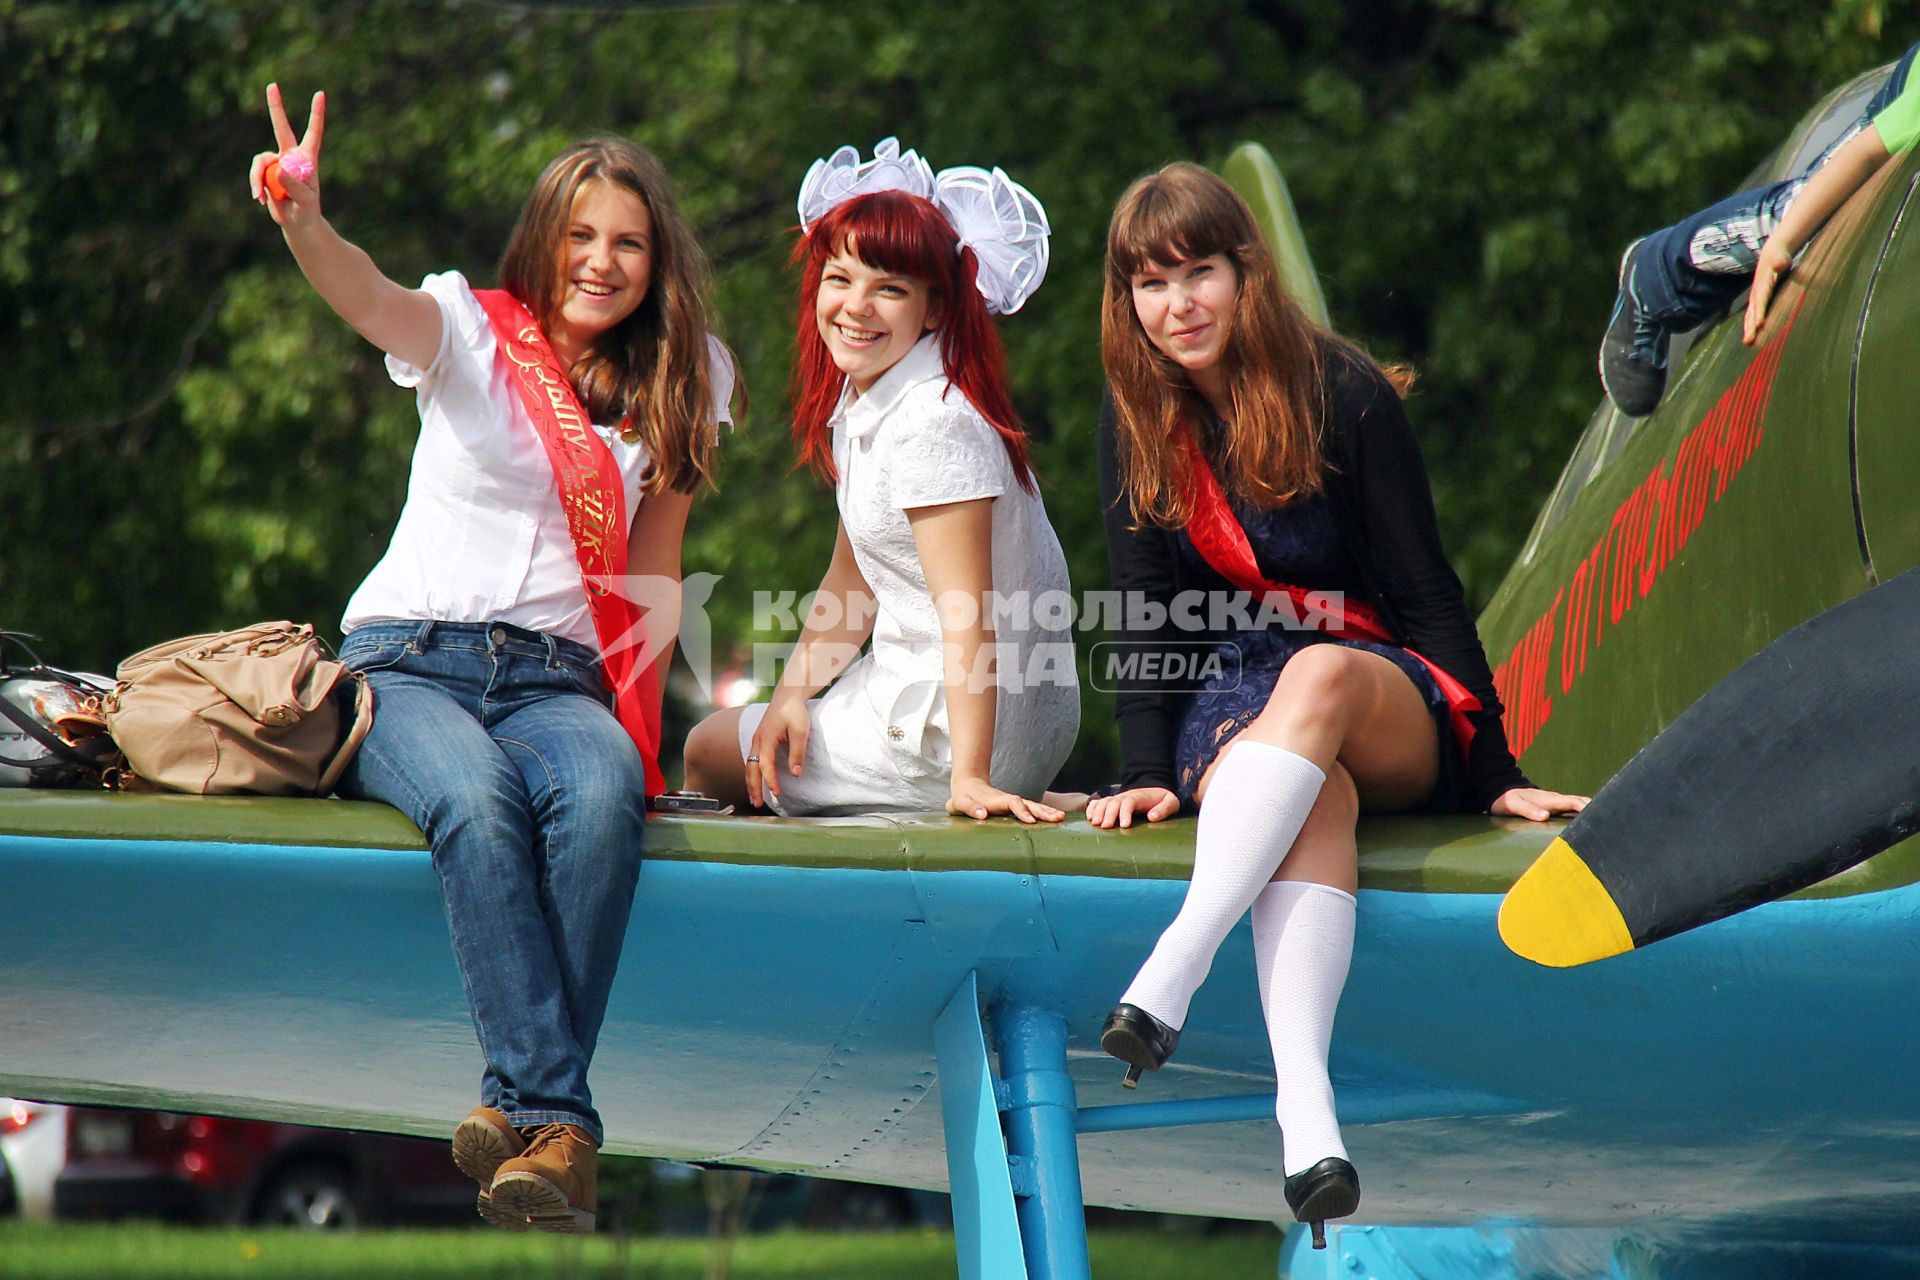 Последний звонок в Нижнем Новгороде. На снимке: девушки сидят на крыле самолета.